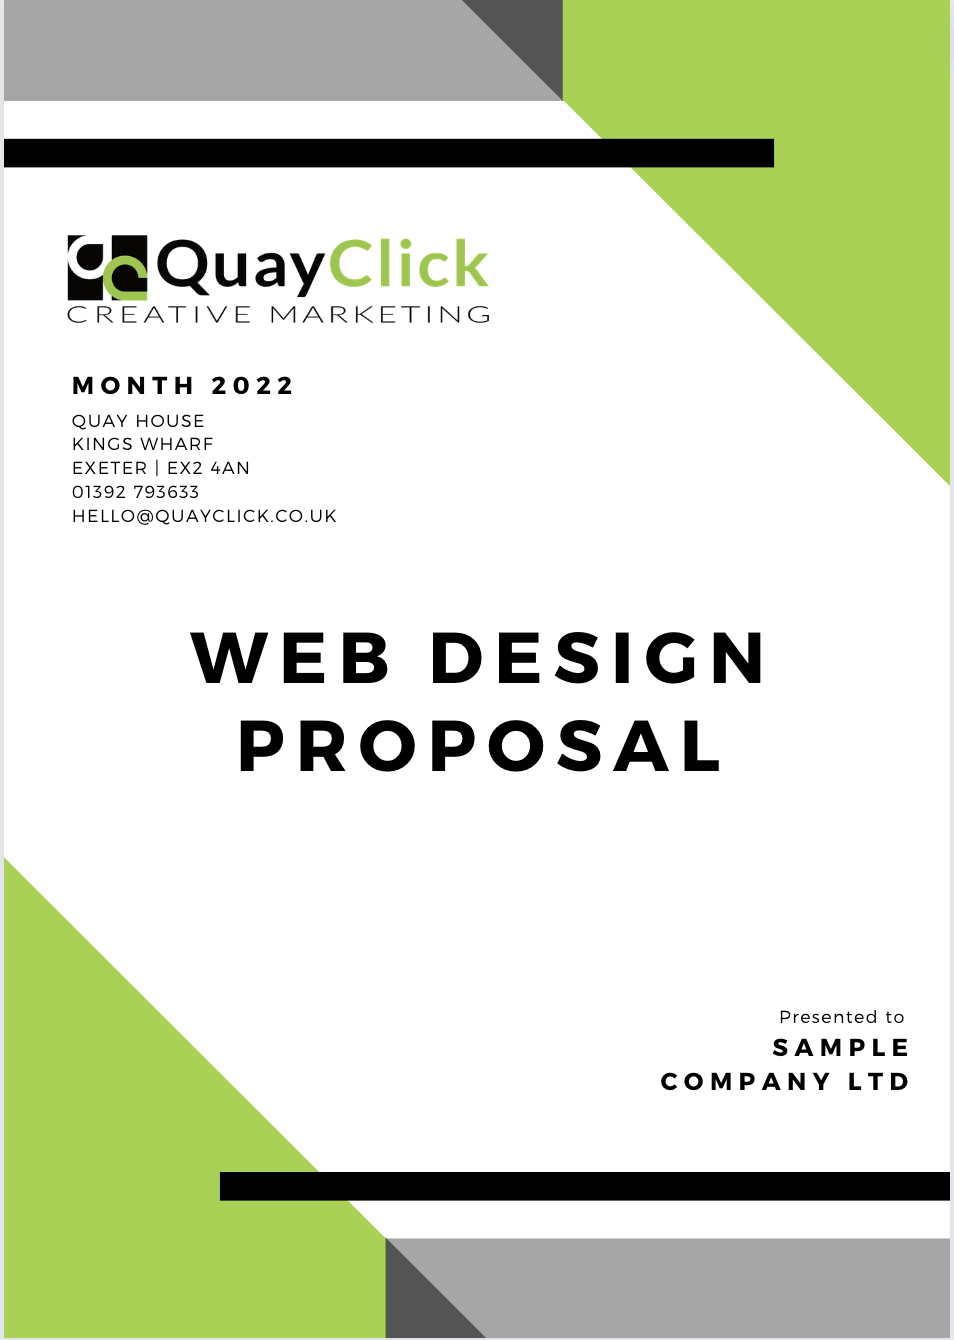 Web Design Proposal | QuayClick Exeter